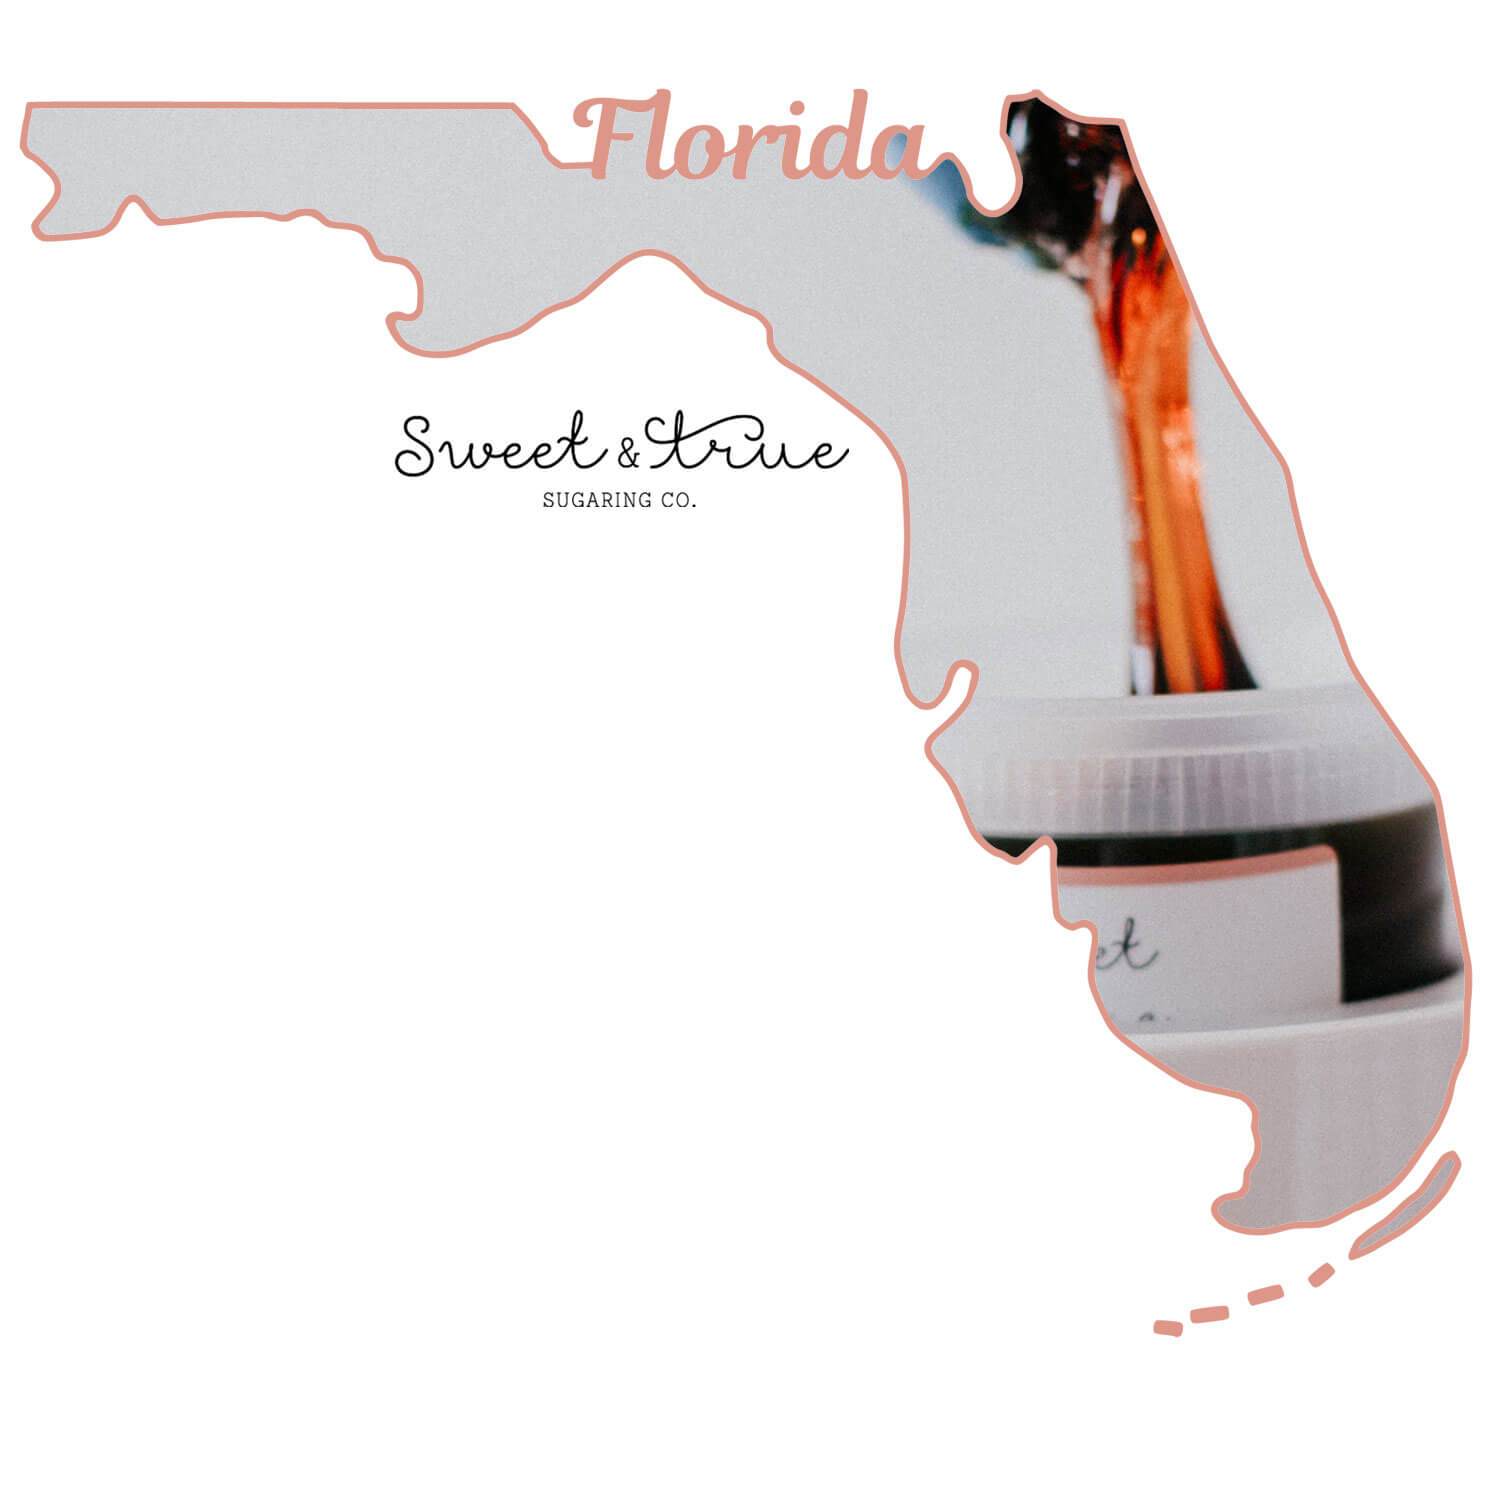 Tampa, Florida - Sugaring Certification